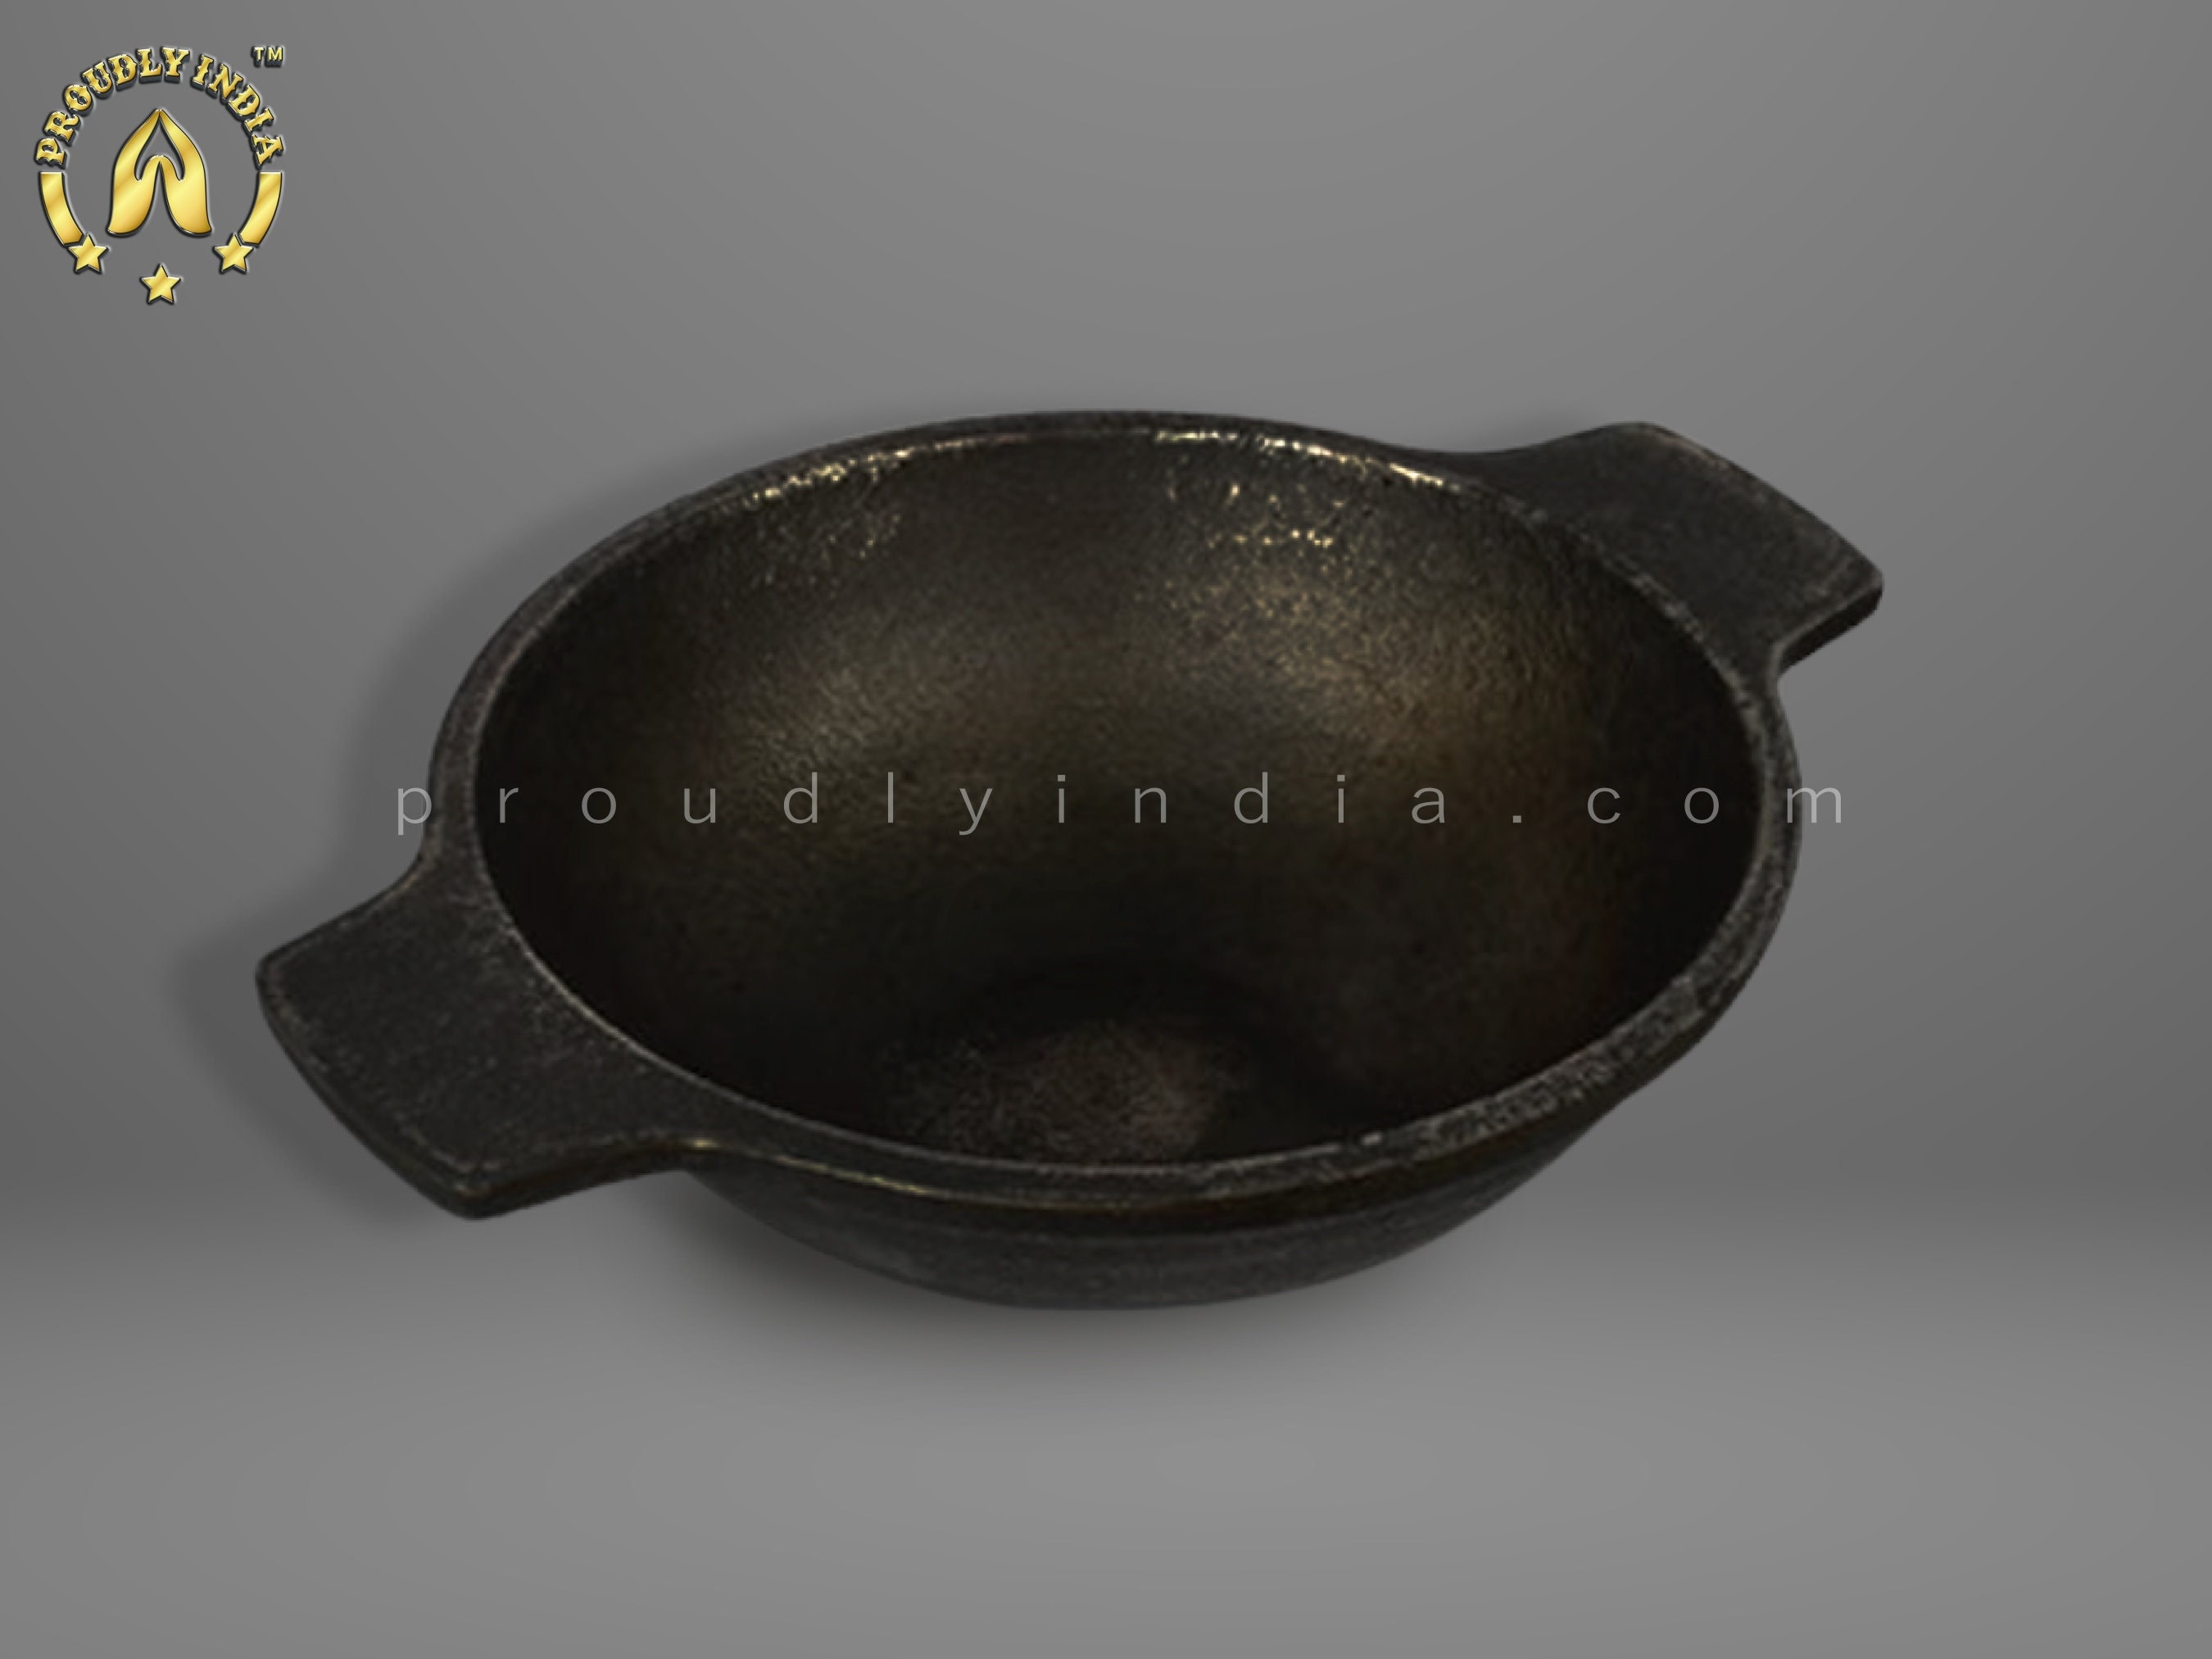 Iron Curve Deep Bottom Bombay Kadai,iron Kadai,frying Pan for